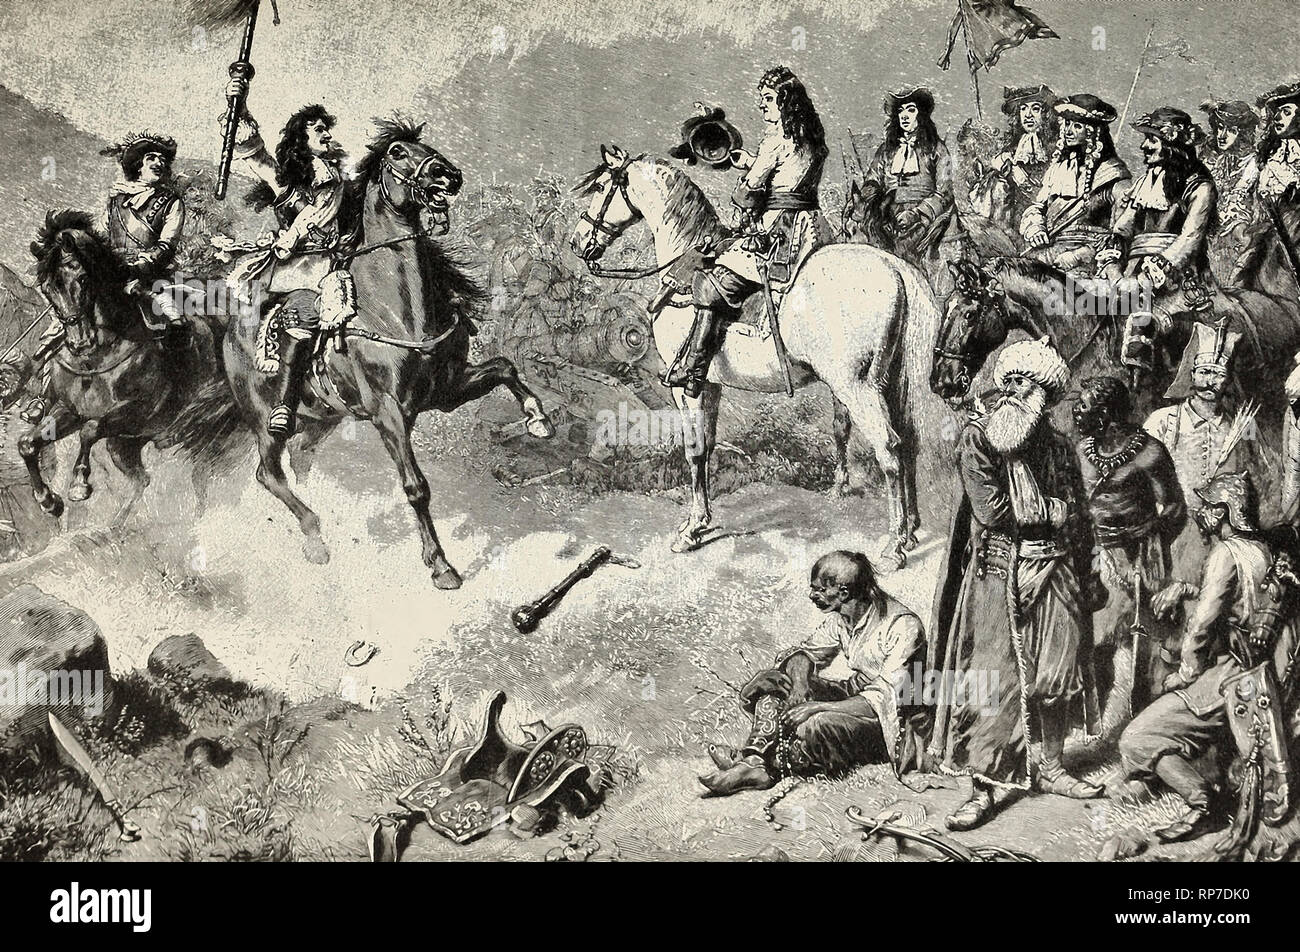 La Vengeance à Mohacs - Le général autrichien reçoit le Standard turc conquis à la deuxième bataille de Mohacs Banque D'Images